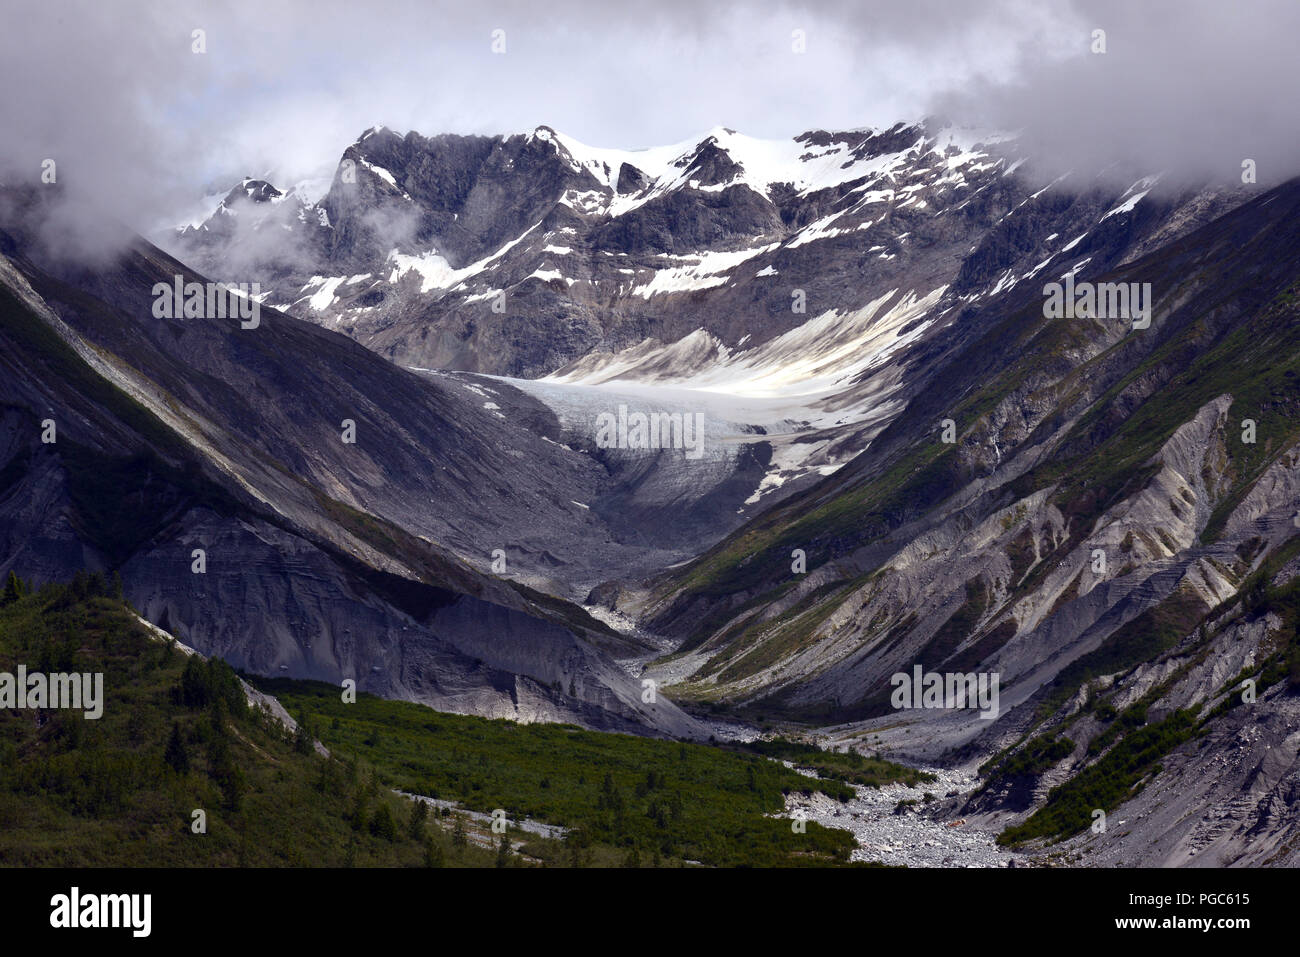 Landschaft Szene in der Glacier Bay National Park, Alaska, USA von der Holland America Line Kreuzfahrt Schiff Volendam gesehen Stockfoto